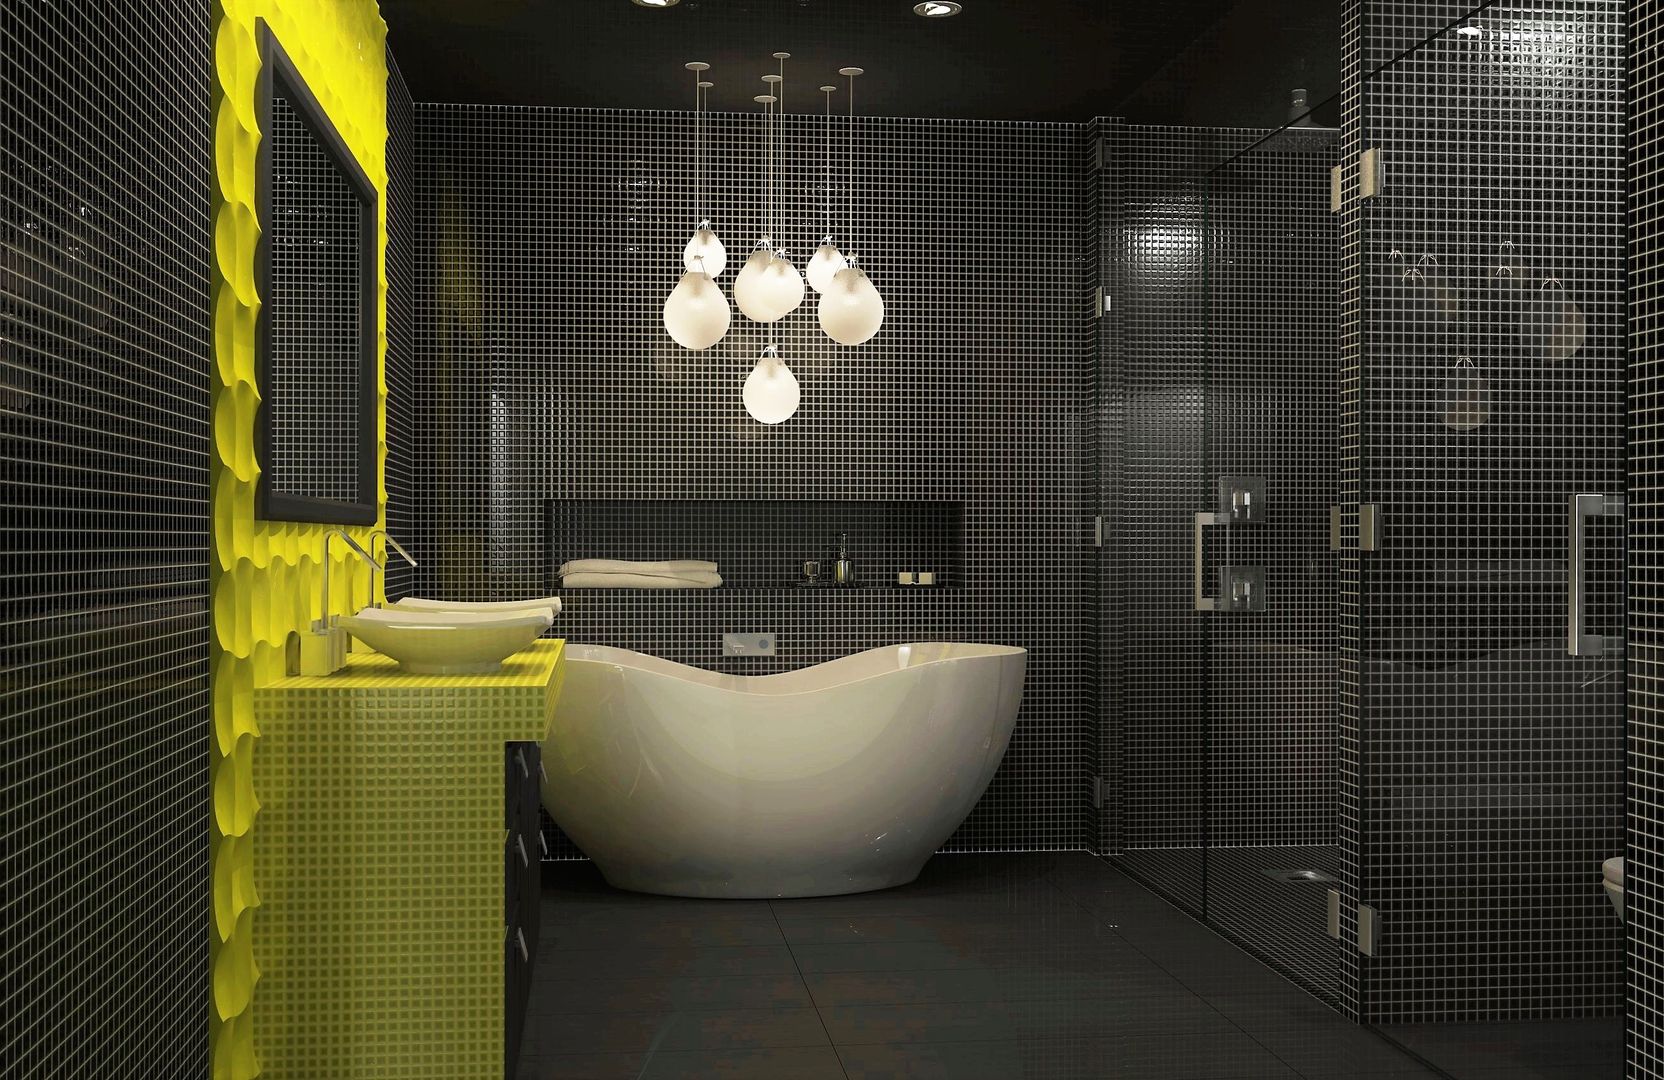 Bathroom interior design Lena Lobiv Interior Design Banheiros modernos interior,interiordesign,bathroom,mosaic tile,bright colours,homedecor